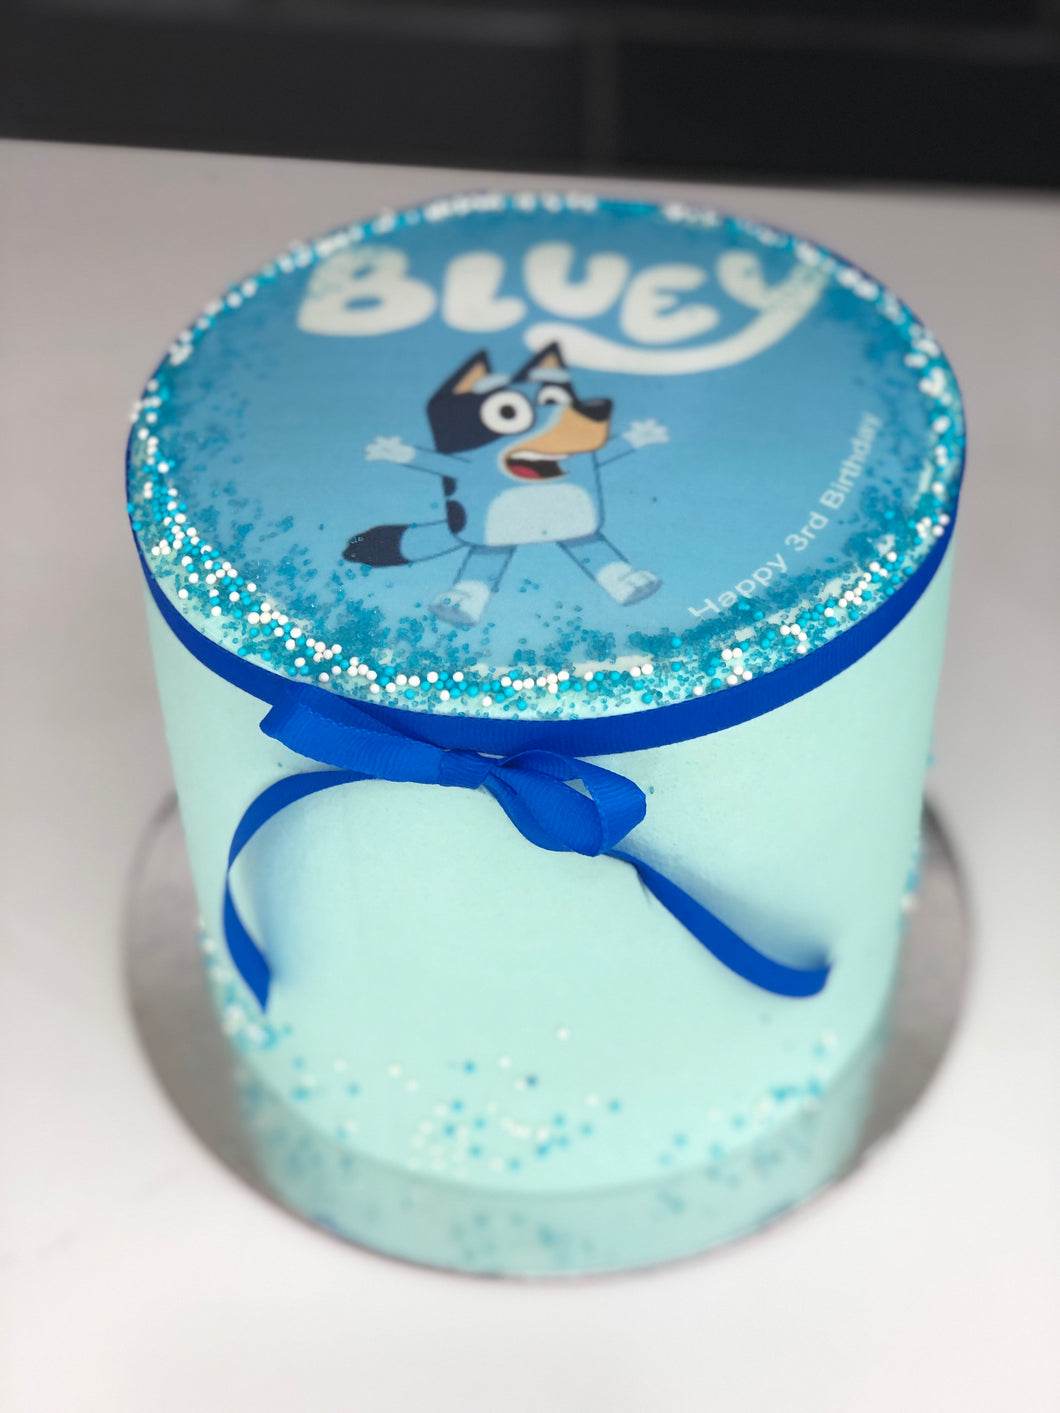 6” Bluey Image Cake